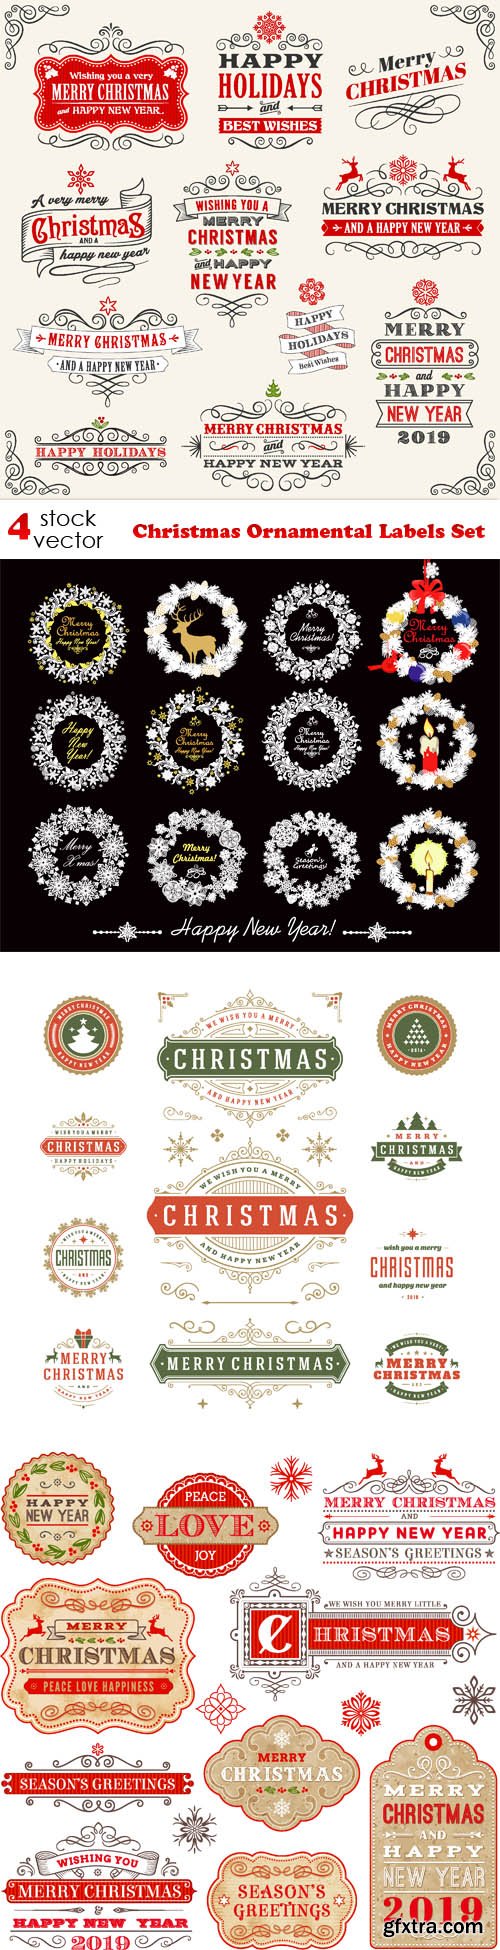 Vectors - Christmas Ornamental Labels Set